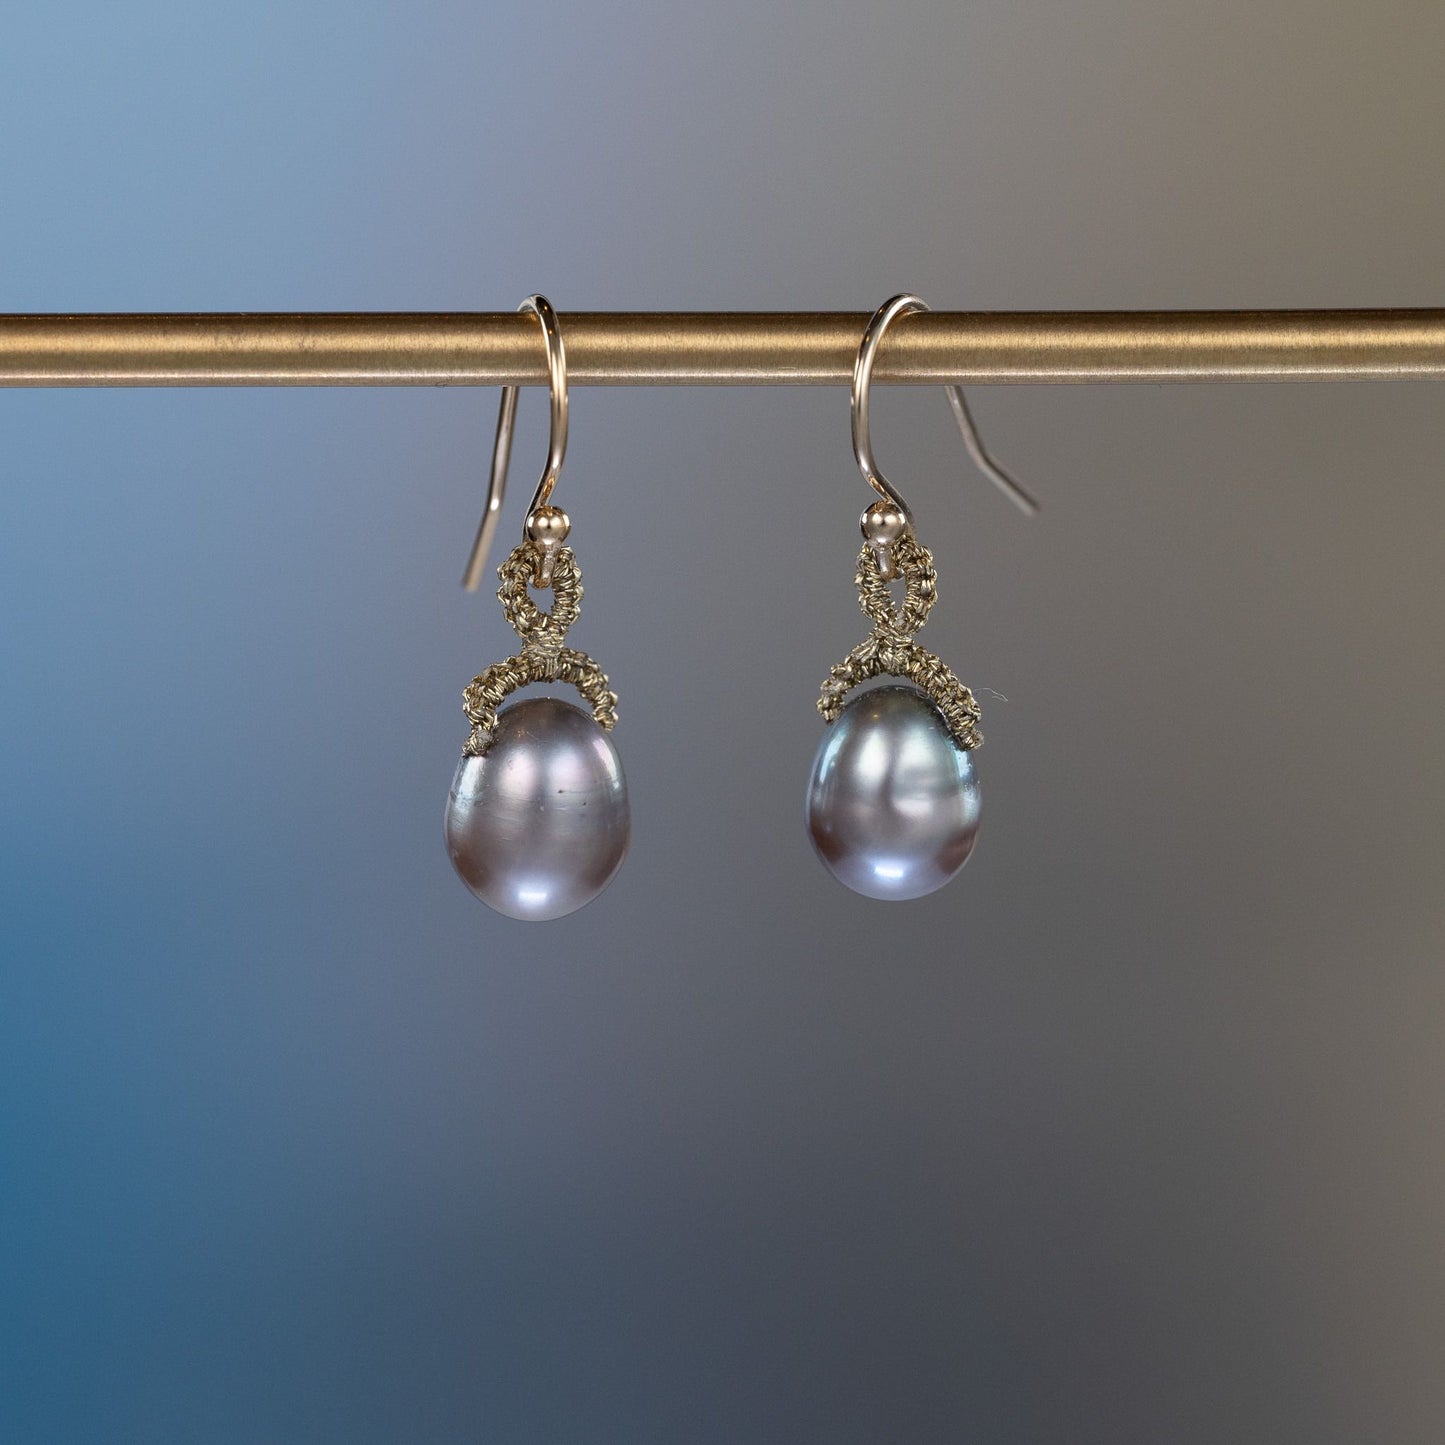 Danielle Welmond Grey Pearl Drop Earrings